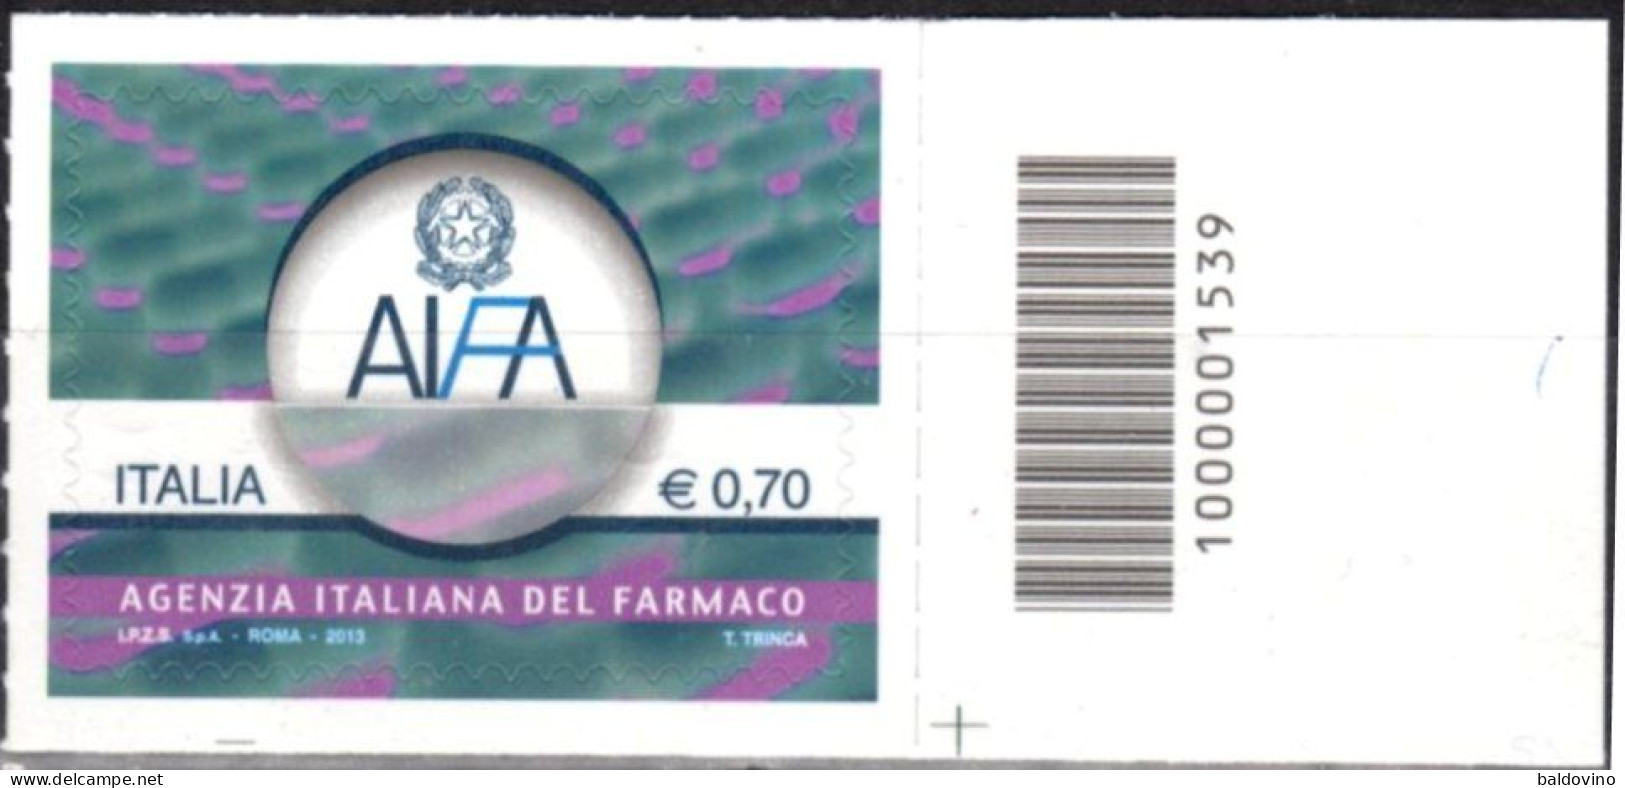 Italia 2013 Lotto 21 valori codice a barre (vedi descrizione).